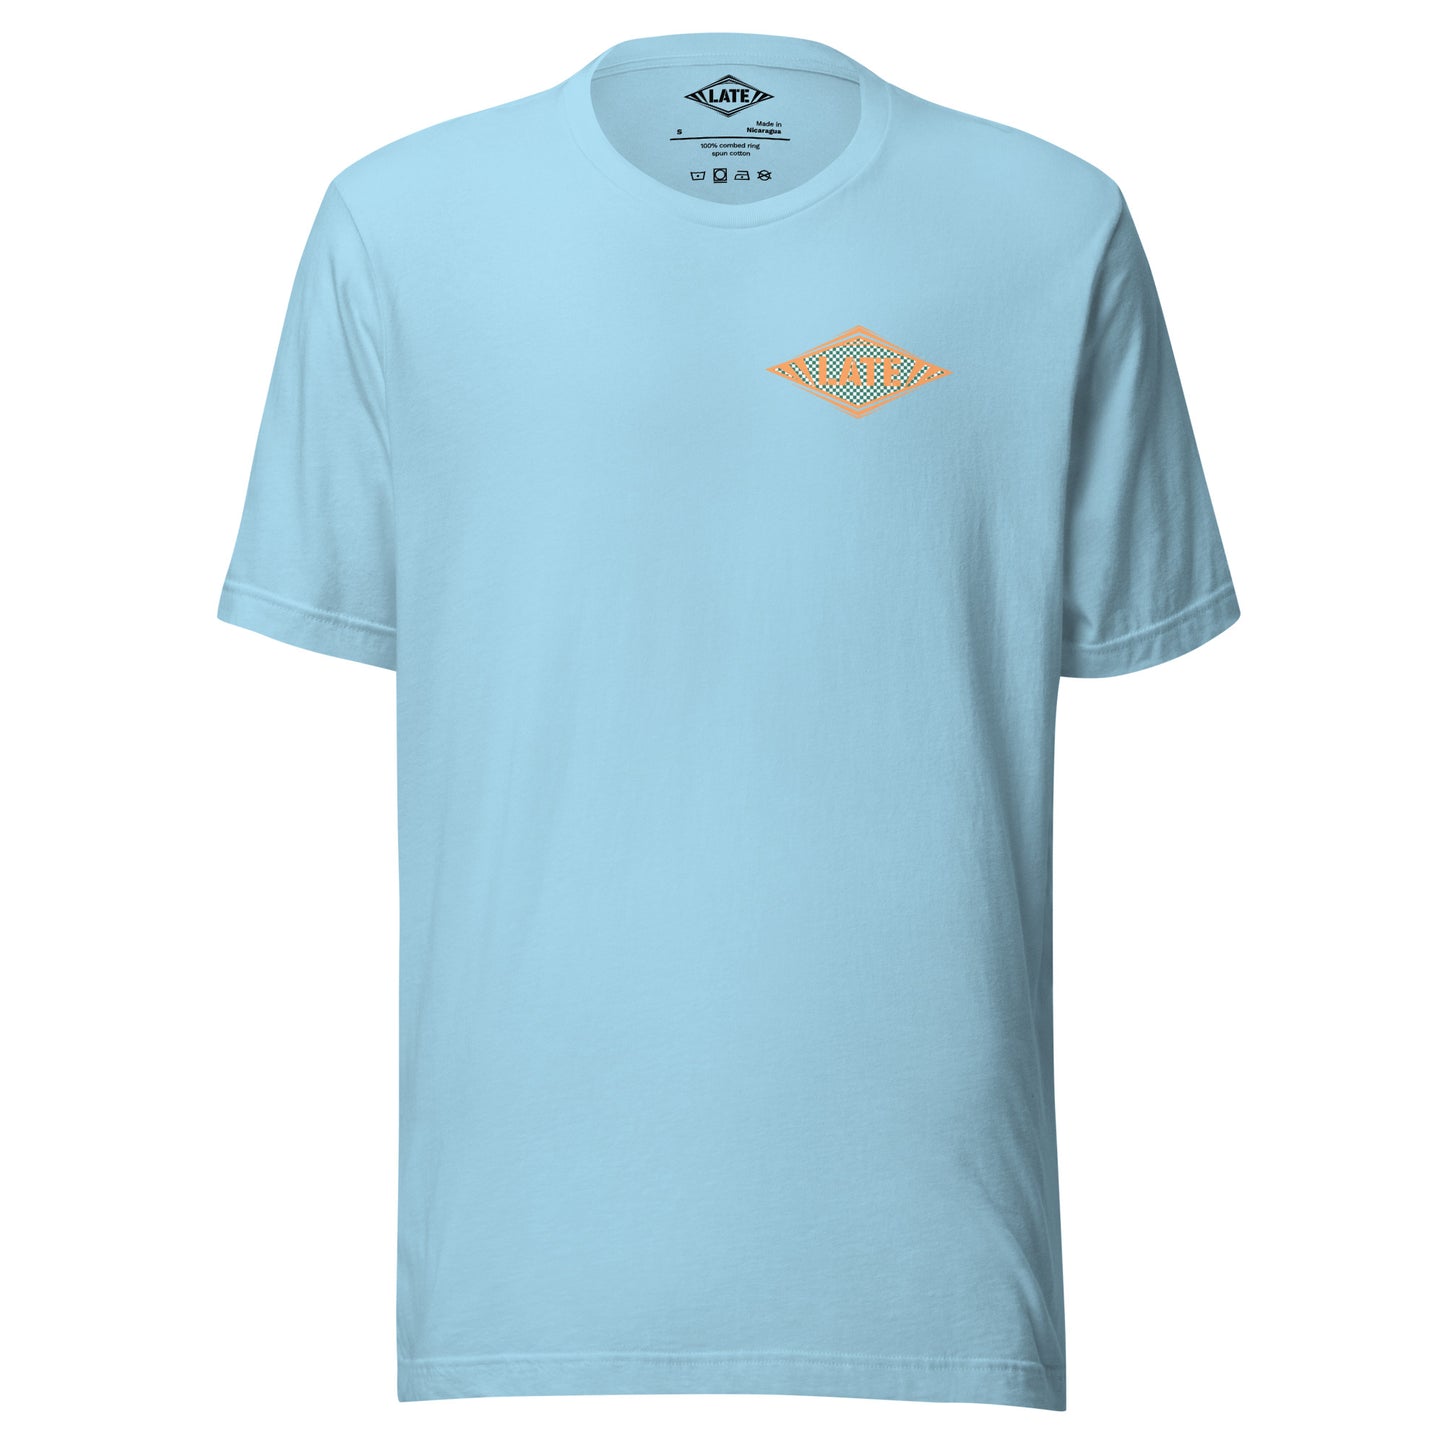 T-Shirt Shred It skateboard style Vans logo Late à carreaux. T-Shirt unisex de face couleur bleu océan